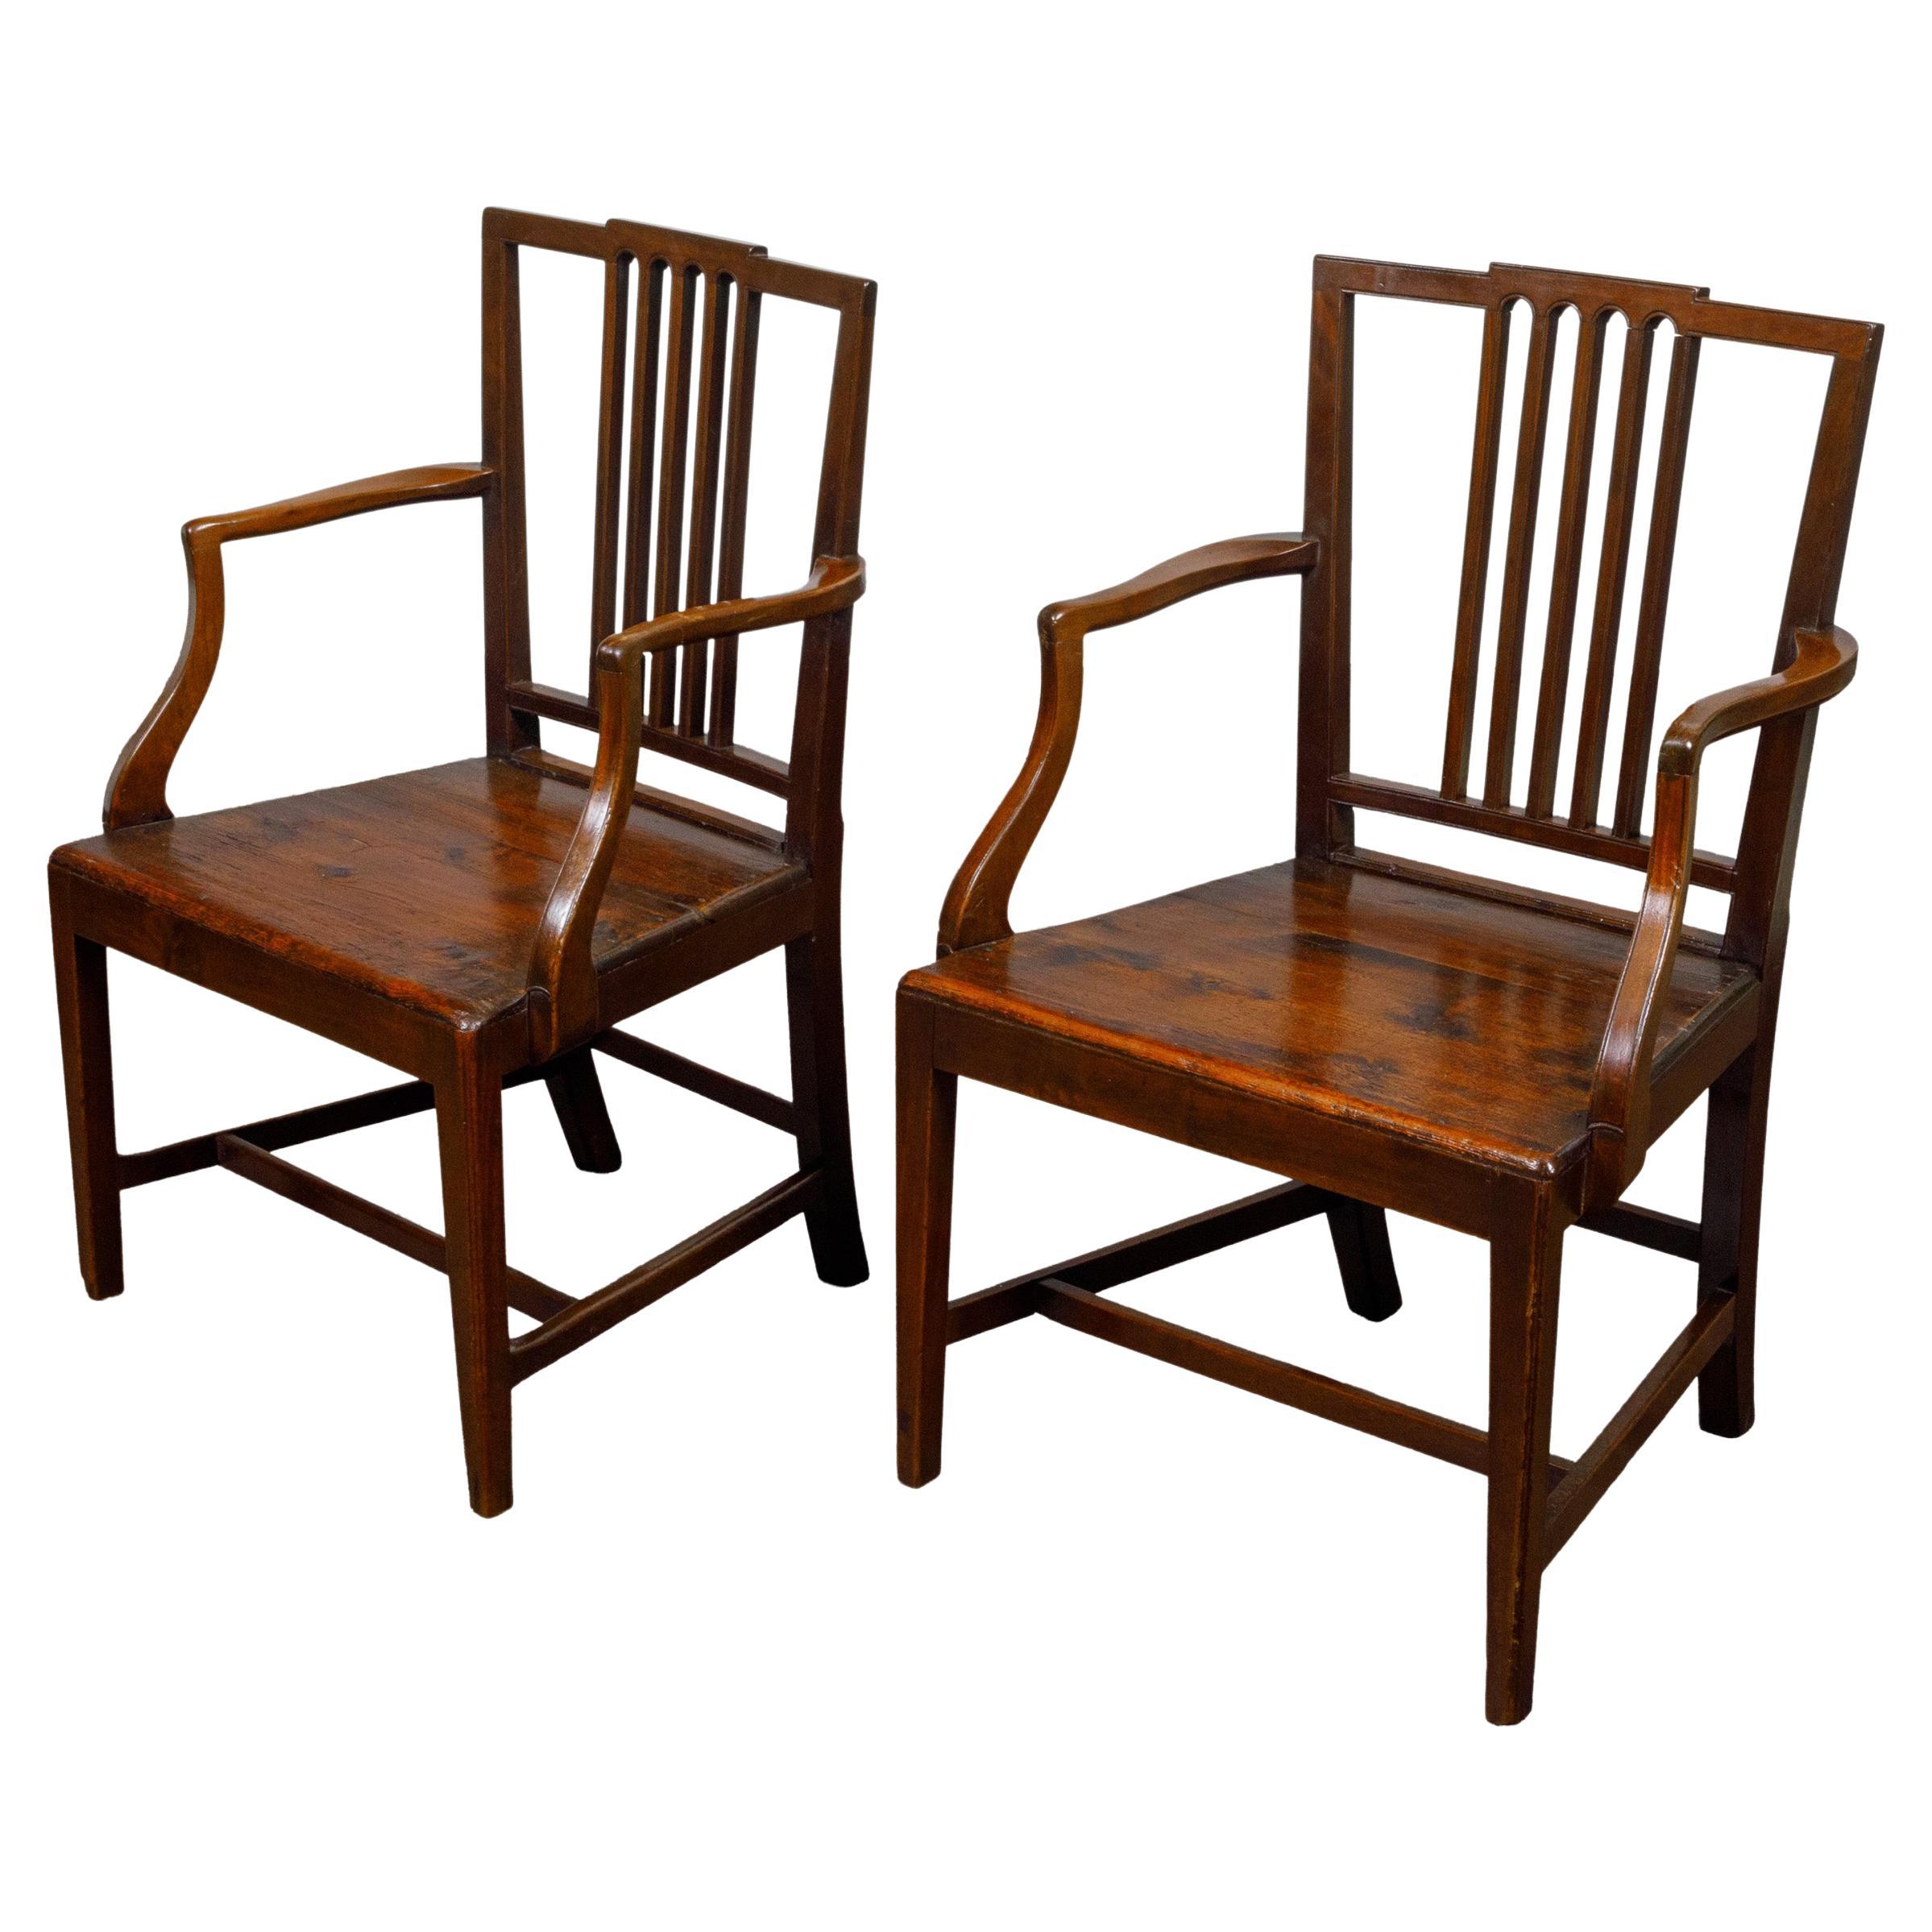 Paar englische Pflanzgefäß-Sitzstühle des frühen 19. Jahrhunderts mit geschwungenen Armlehnen